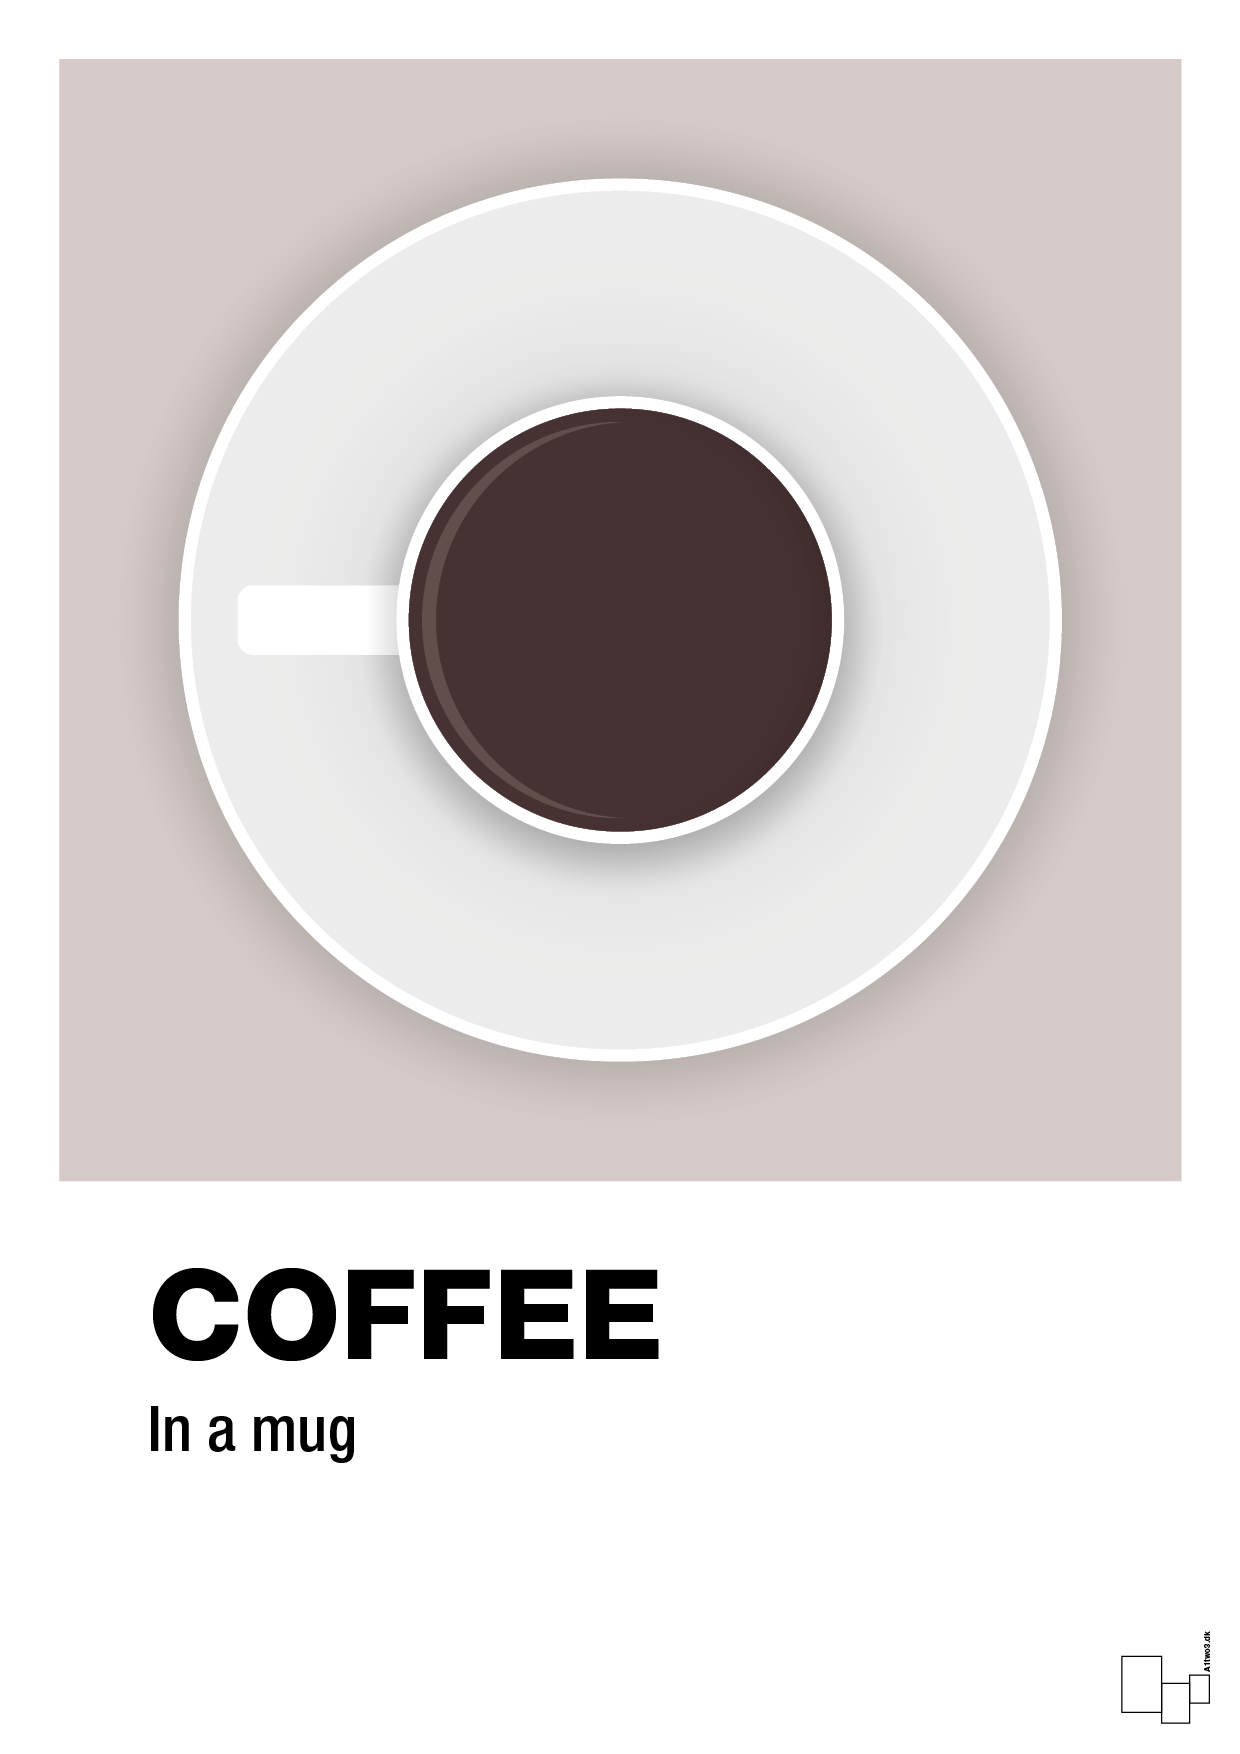 coffee in a mug - Plakat med Mad & Drikke i Broken Beige